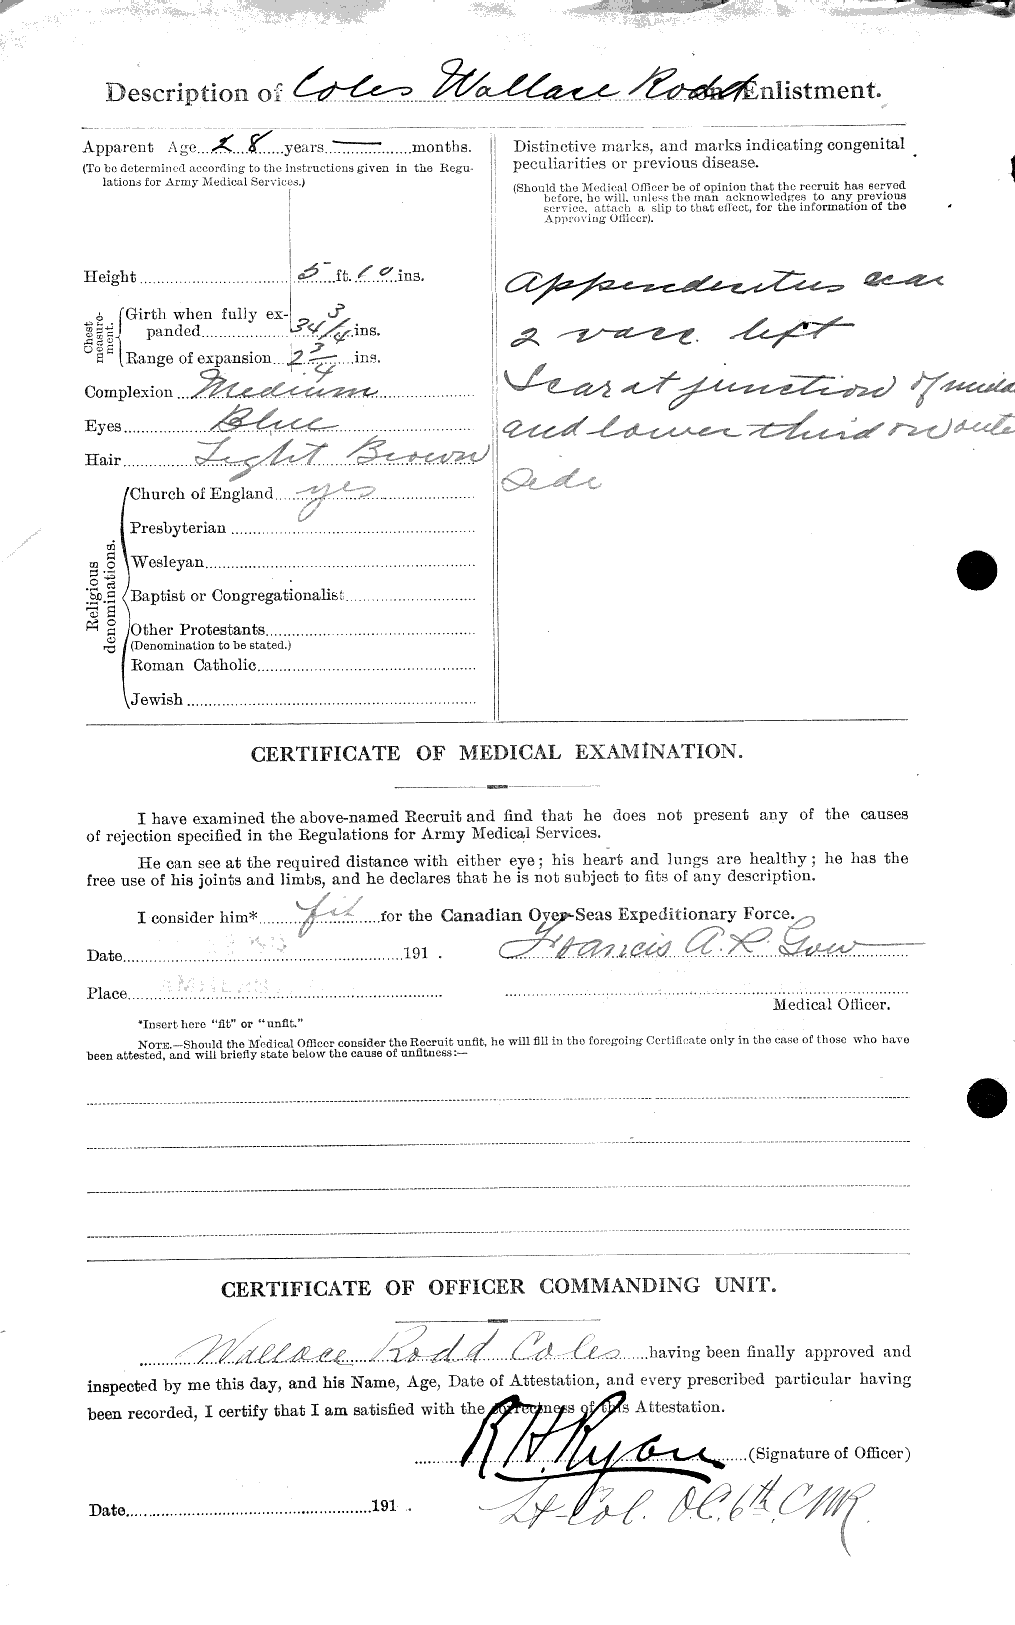 Dossiers du Personnel de la Première Guerre mondiale - CEC 028423b